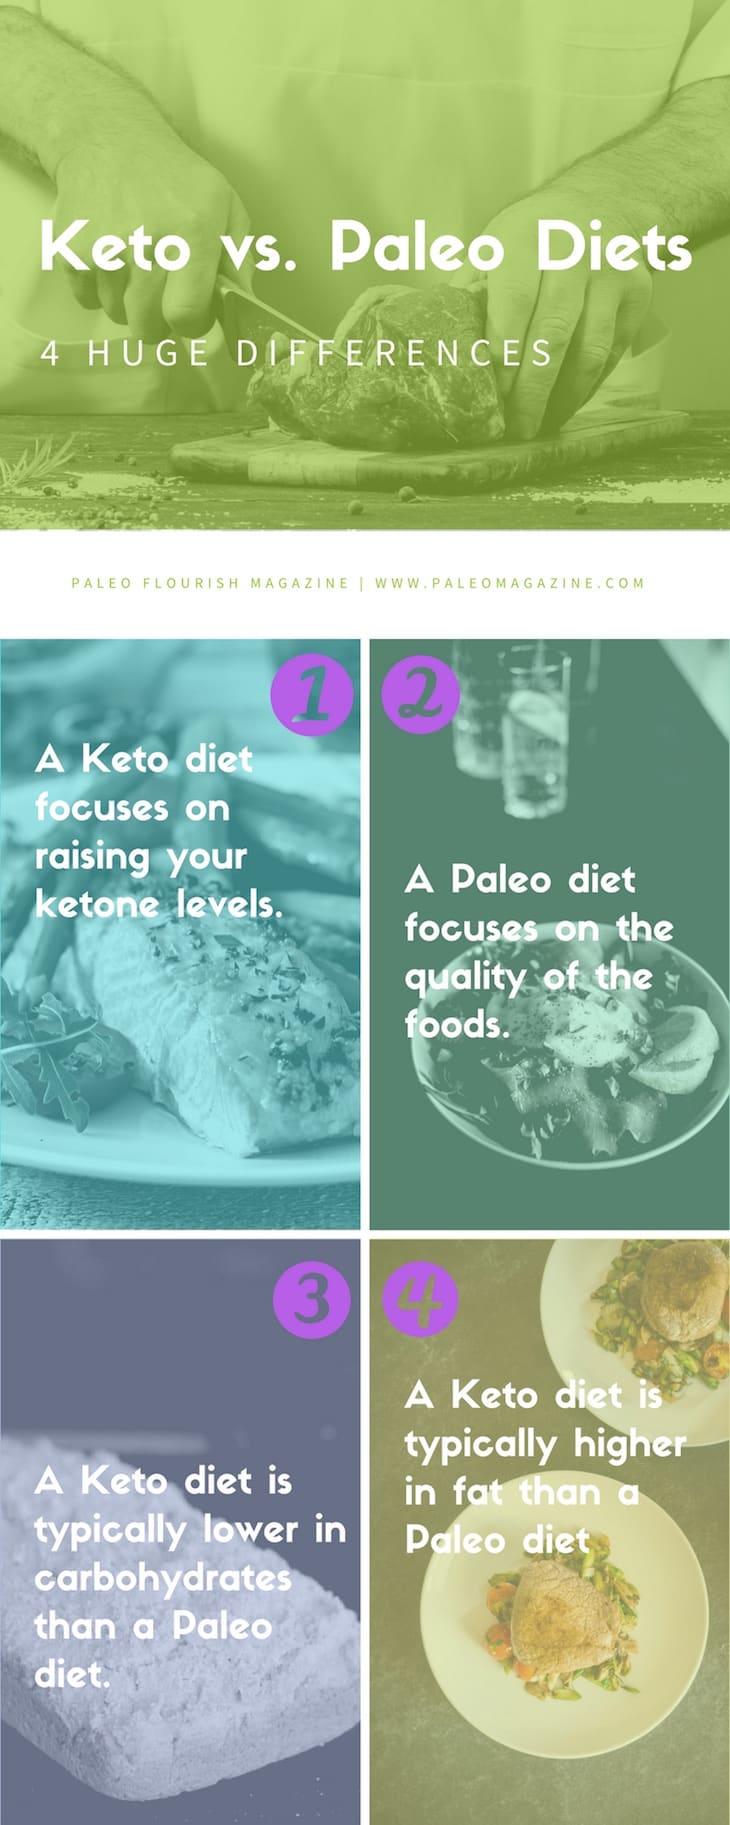 Keto vs Paleo Diets - Infographic #paleo #keto https://ketosummit.com/keto-vs-paleo-diets